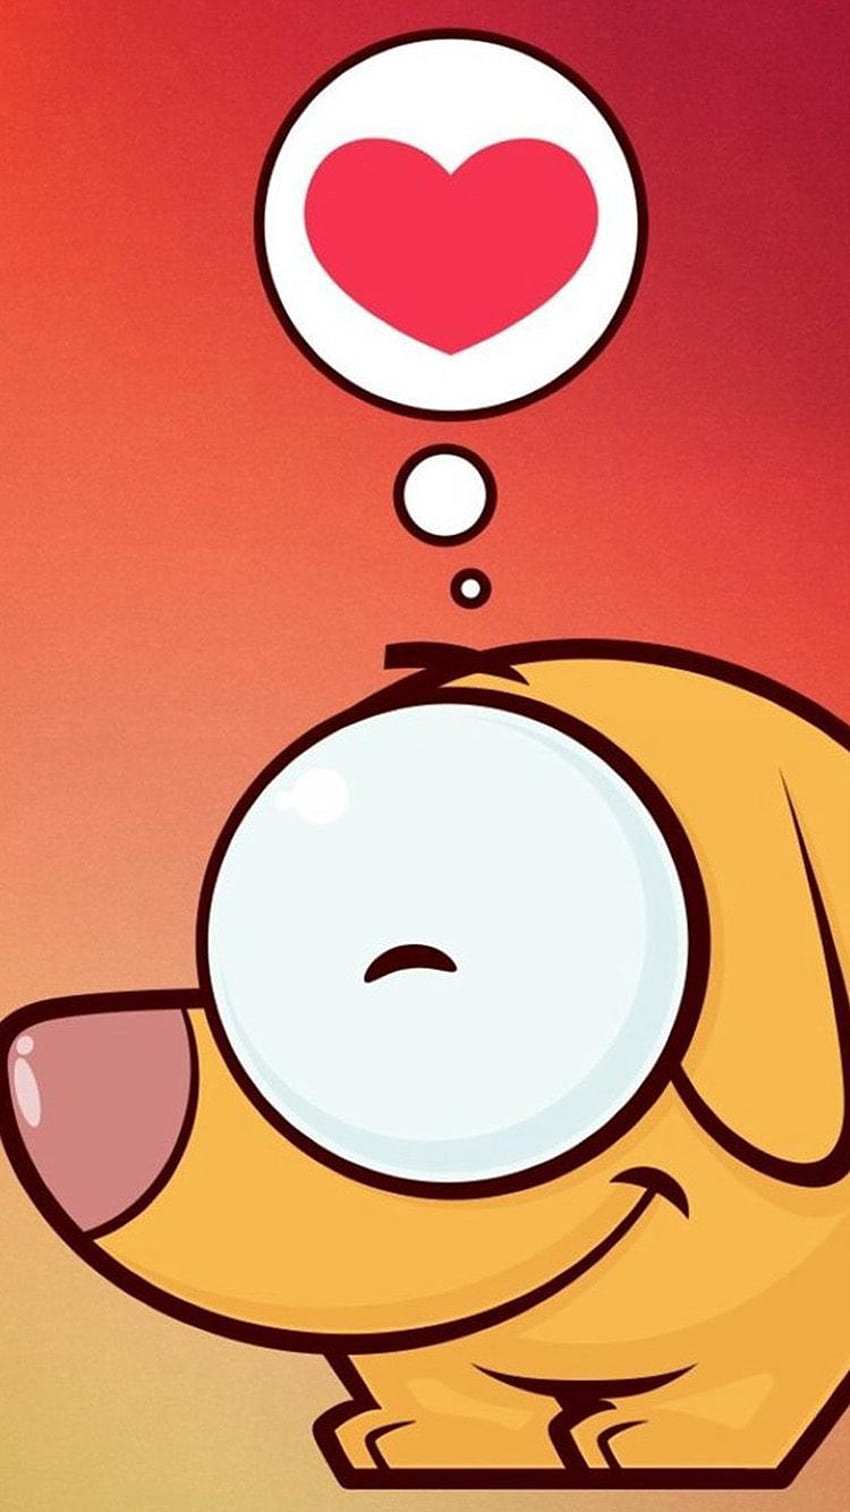 â¡TOCA Y OBTÉN LA APLICACIÓN! Fun Cartoons Love Ombre Heart Orange Red iPhone 5 Wallpape. Android , Animación de amor , Genial para teléfonos fondo de pantalla del teléfono